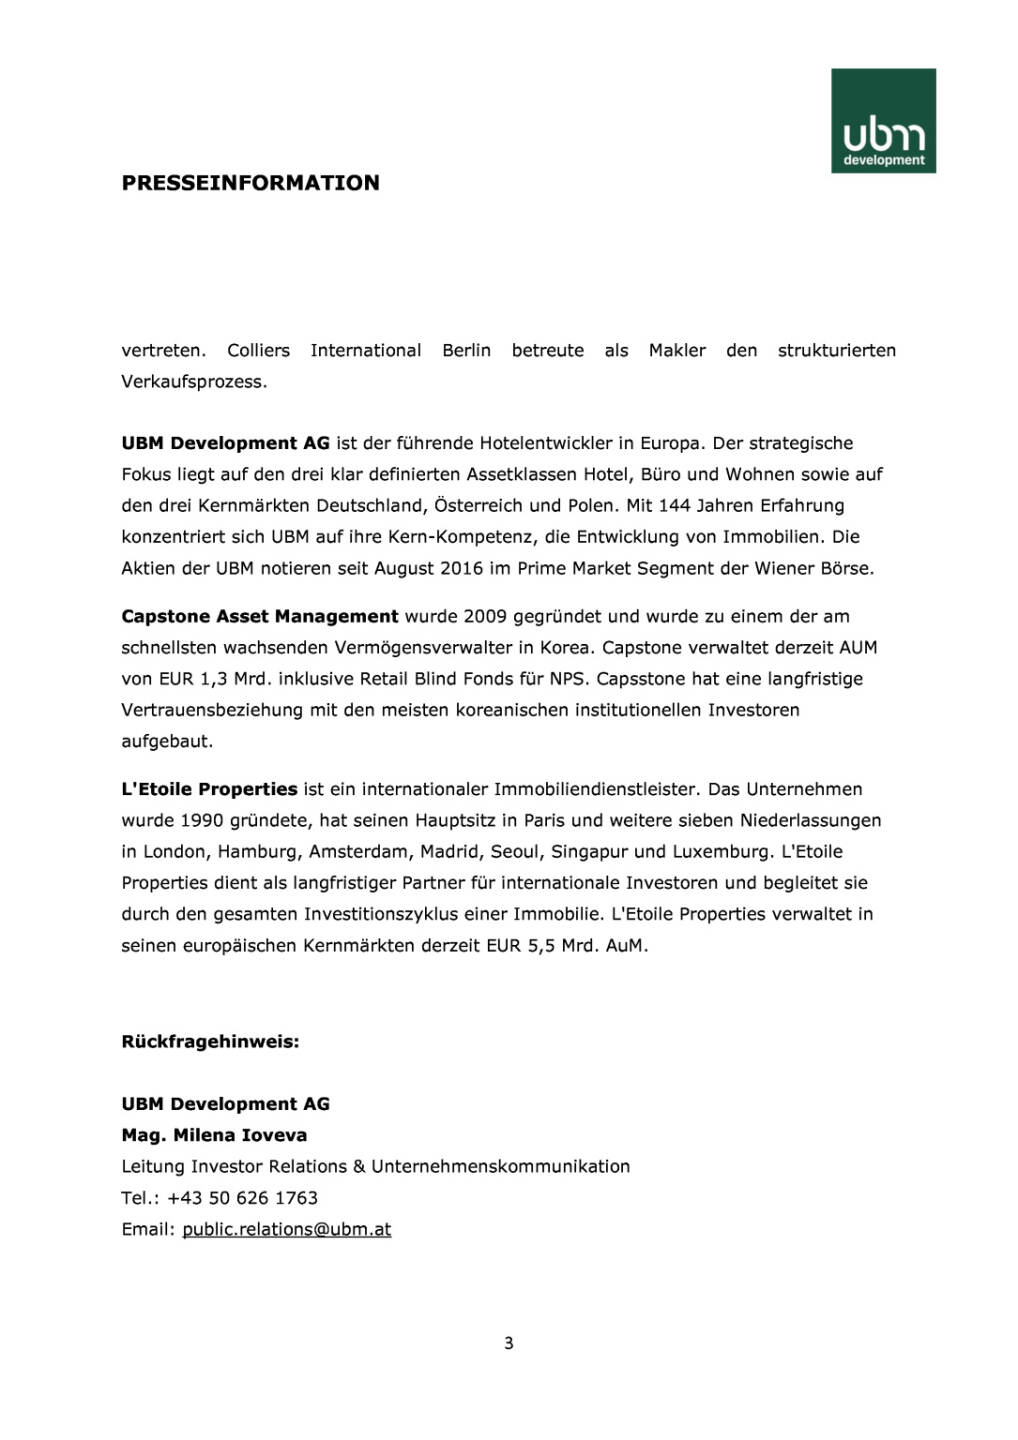 UBM veräußert neues „Zalando Headquarter“ in Berlin für EUR 196 Mio. an Capstone Asset Management in einem Forward Deal, Seite 3/3, komplettes Dokument unter http://boerse-social.com/static/uploads/file_2193_ubm_veraussert_neues_zalando_headquarter_in_berlin_fur_eur_196_mio_an_capstone_asset_management_in_einem_forward_deal.pdf